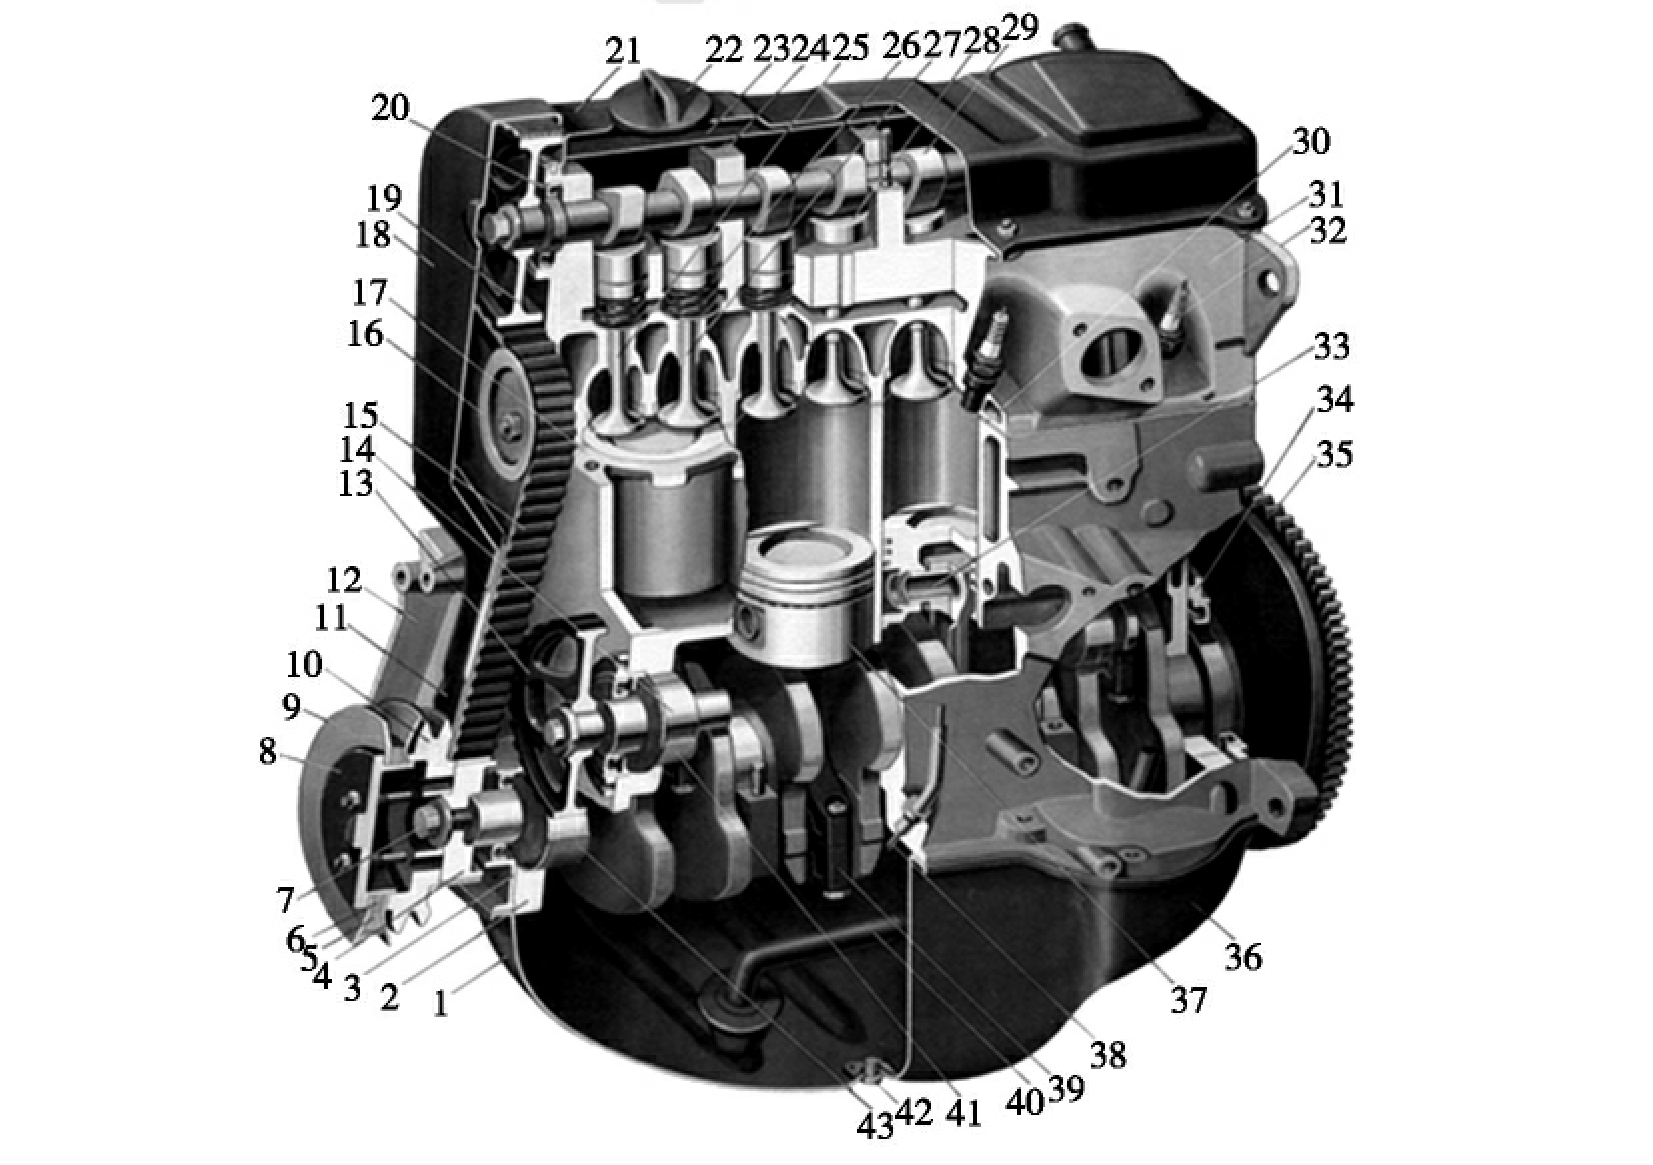 一汽奥迪100型发动机的机体组包括气缸盖31,气缸盖罩21,气缸体17及油